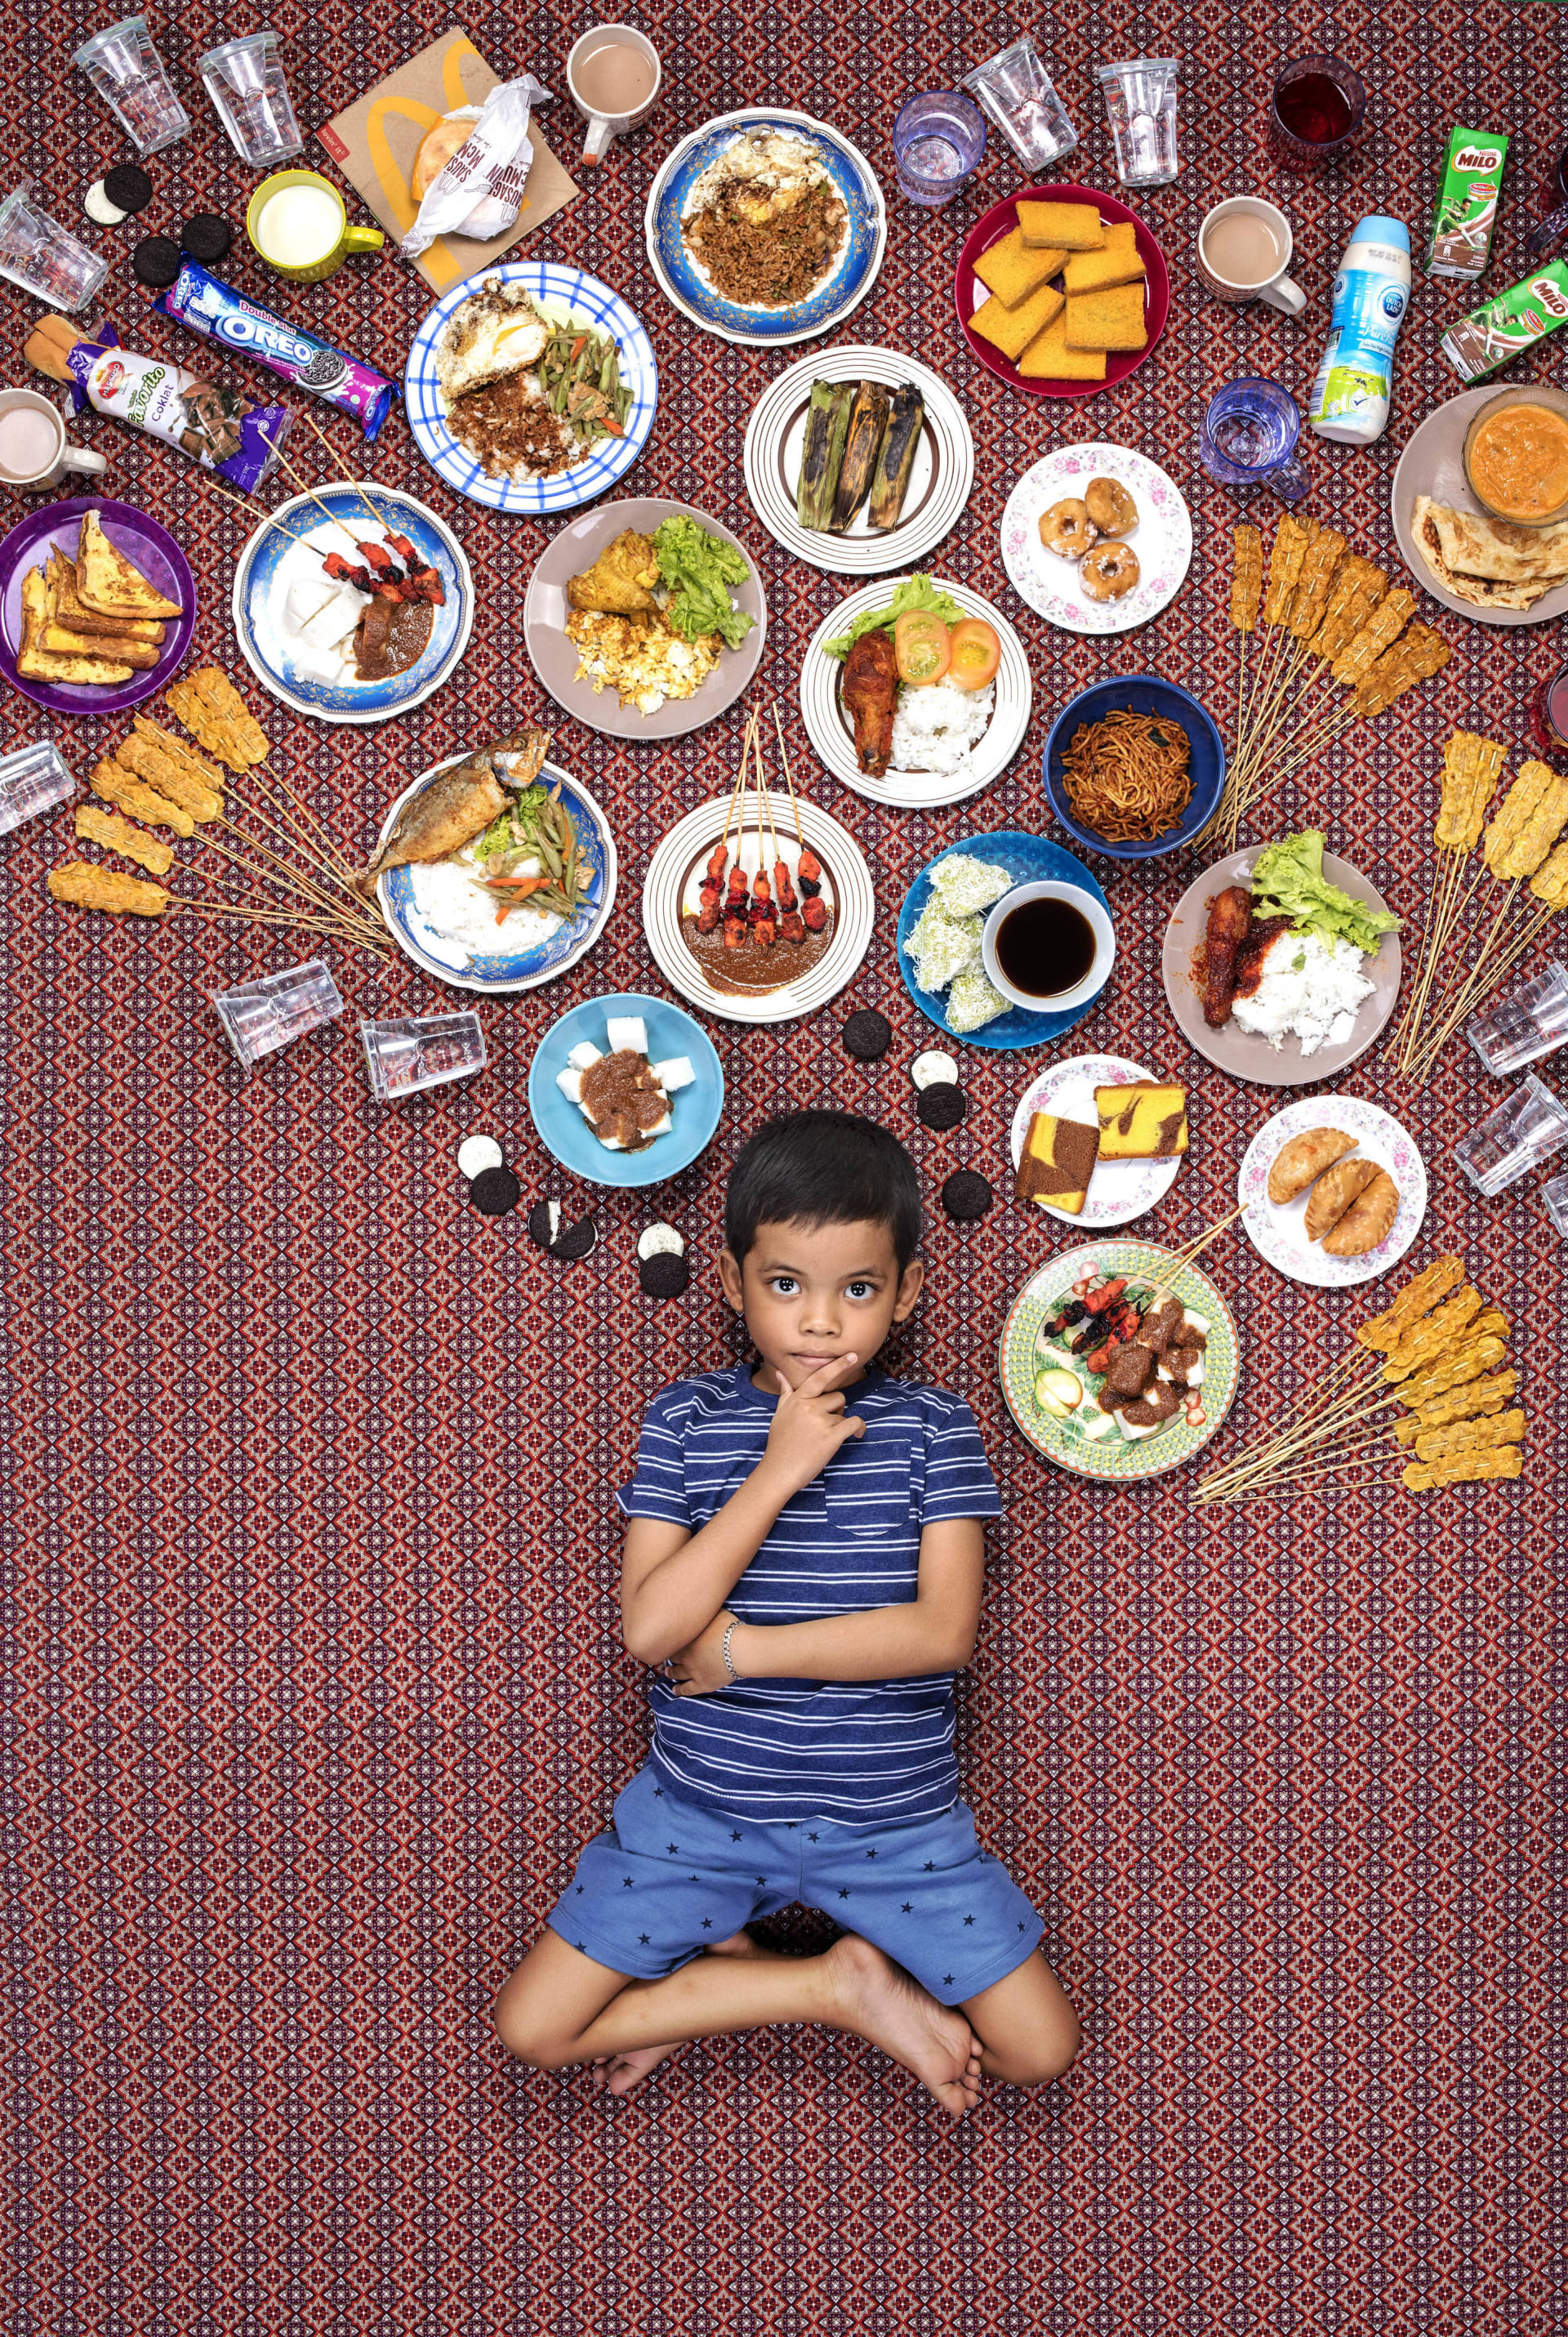 صور تفاجئ الأهل وأولاد وسط أكوام طعام..ما هدف هذا المشروع؟